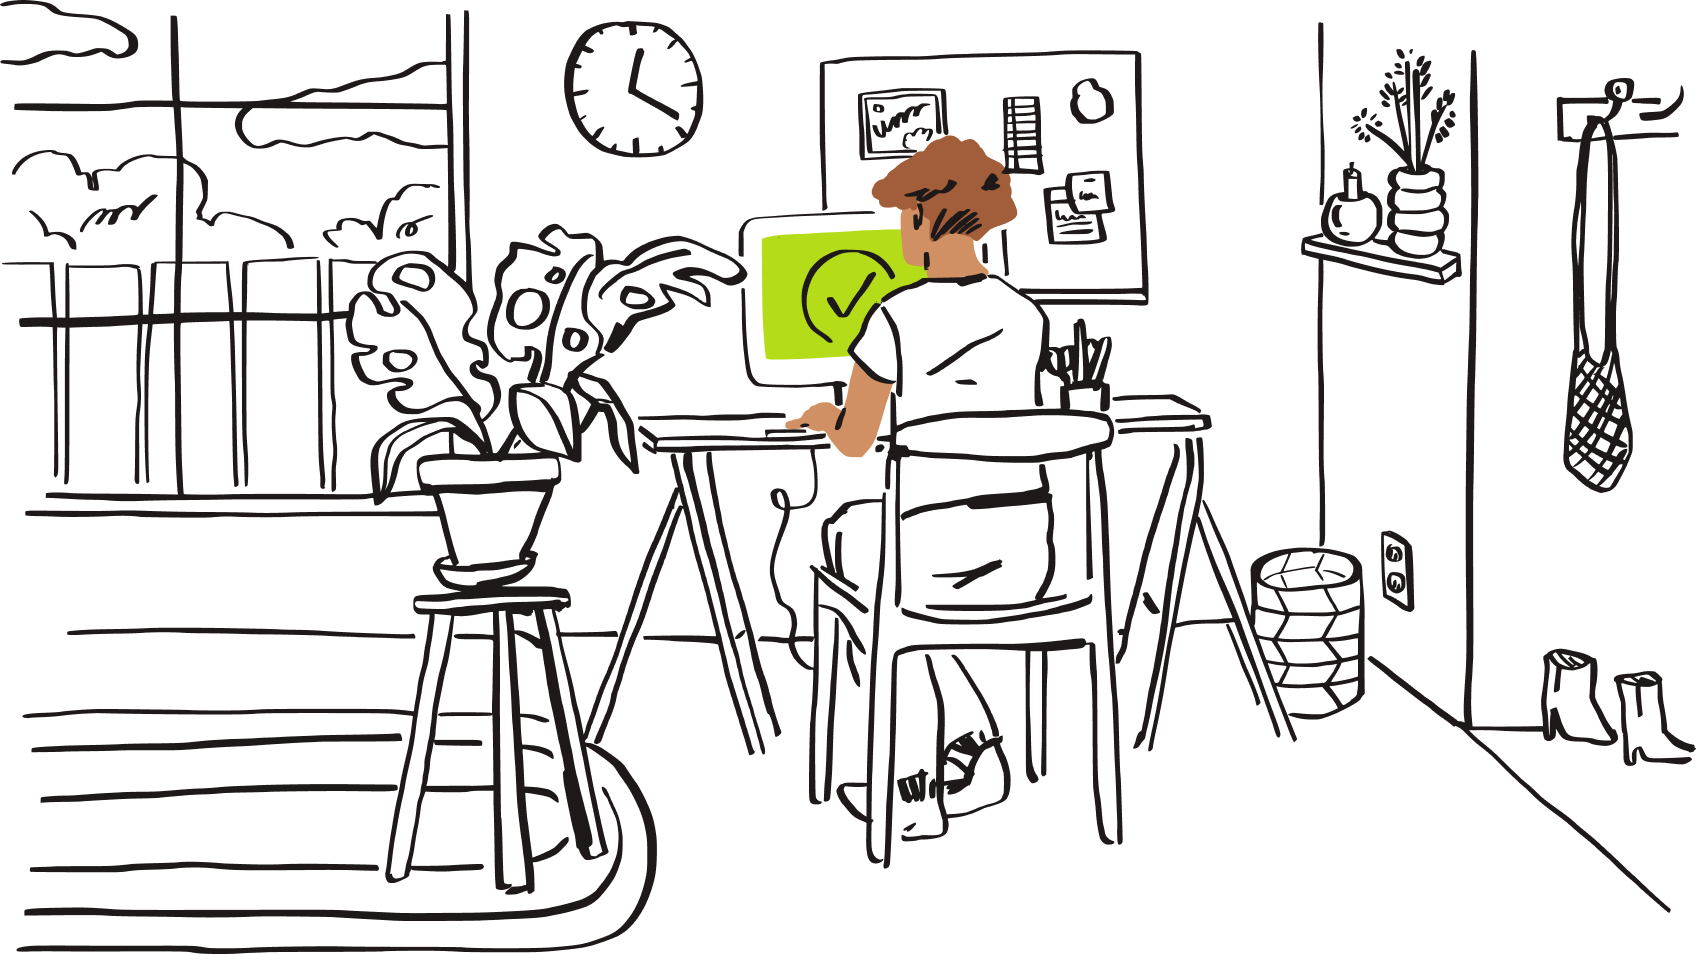 Ілюстрація людини, яка сидить за комп'ютером із зеленою галочкою на екрані.